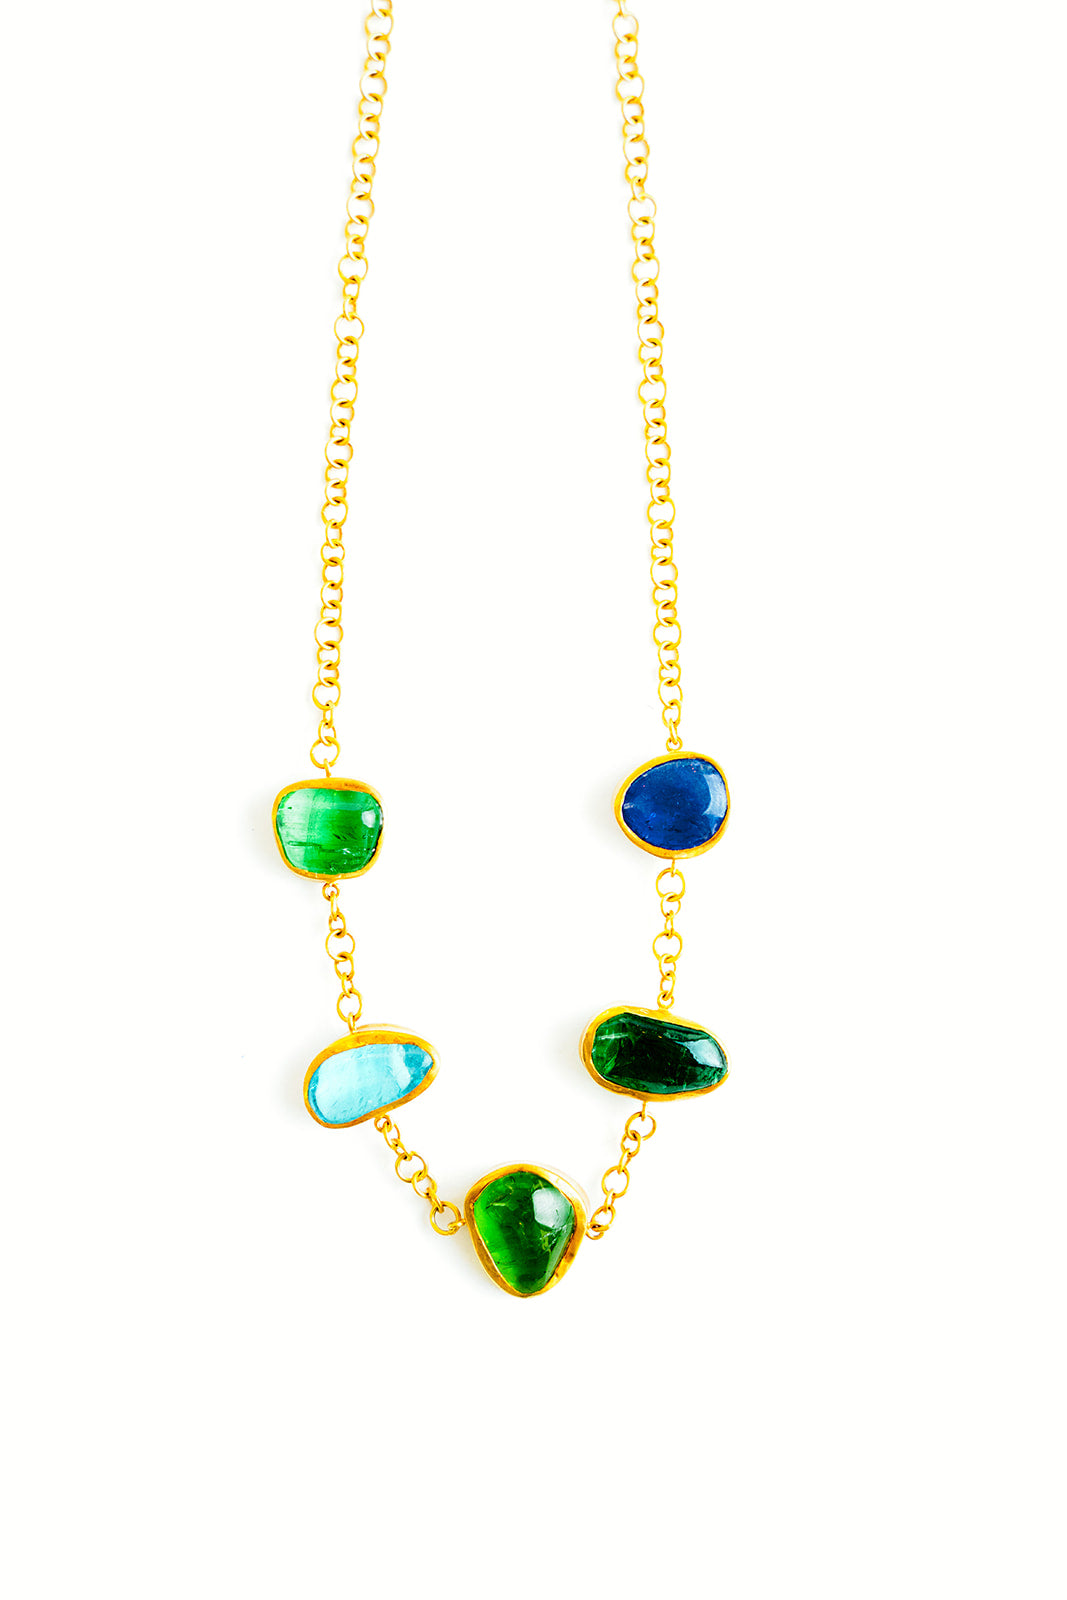 Pippa-Small- 18K-Yellow-Gold-Tanzanite-Aquamarine-Peridot-Five-Stone-Necklace-Amarees